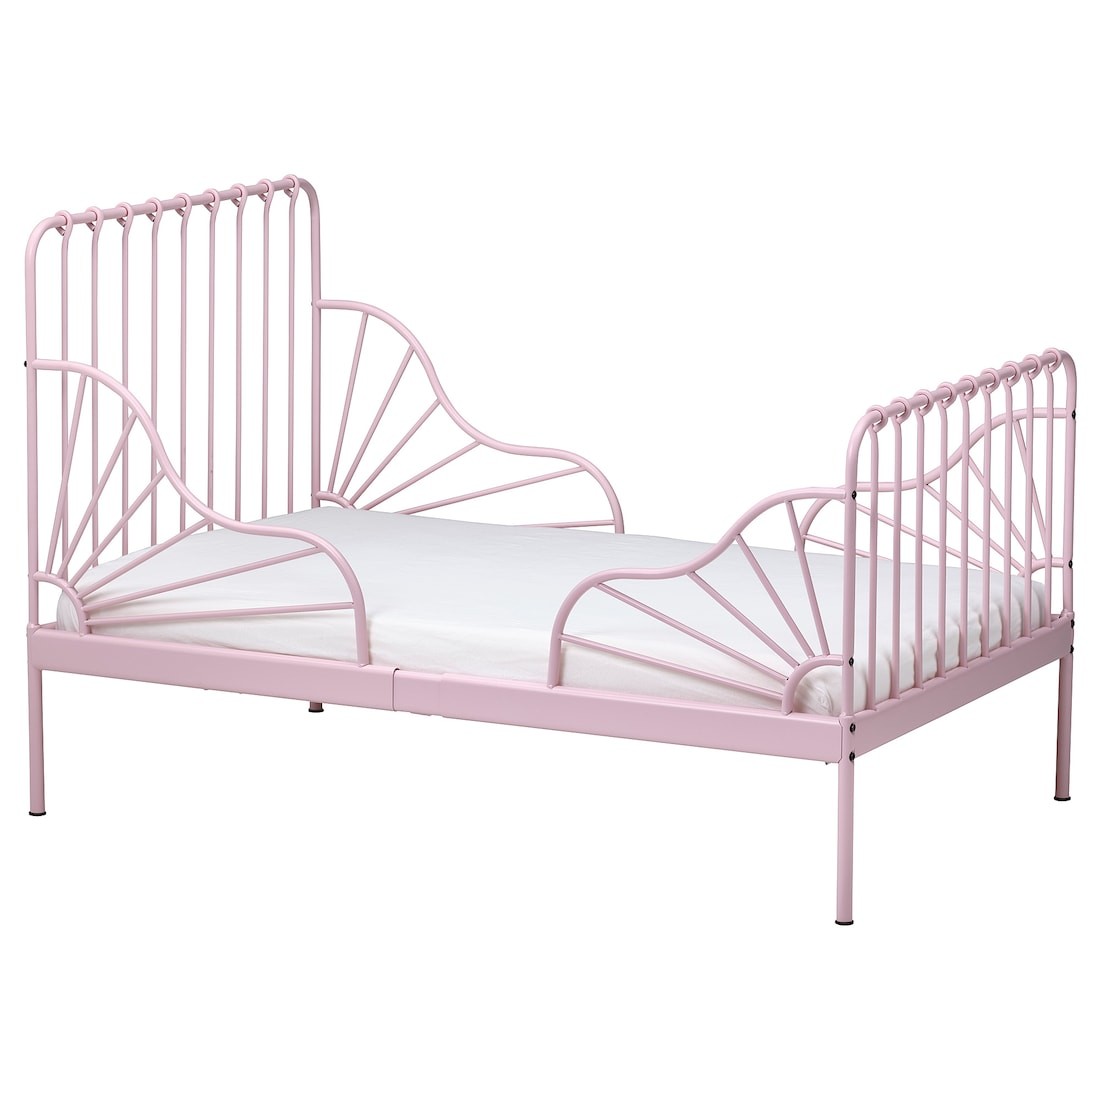 MINNEN МІННЕН Розсувне ліжко, світло-рожевий, 80x200 см